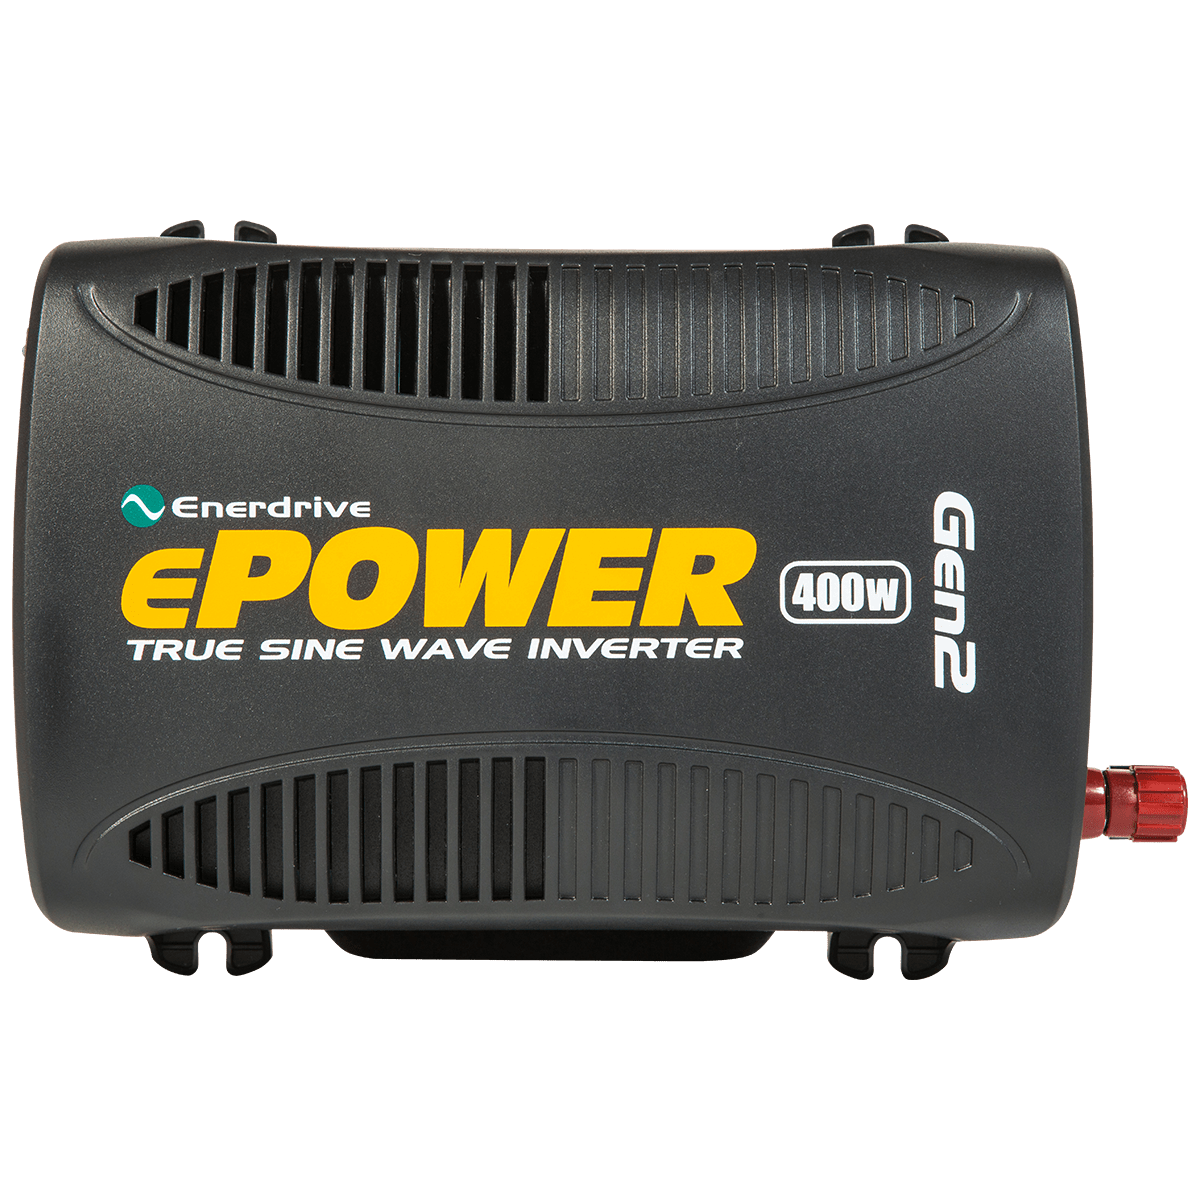 Enerdrive ePOWER 400W Generation 2 True Sine Wave Inverter - EN1104S-12V | Enerdrive